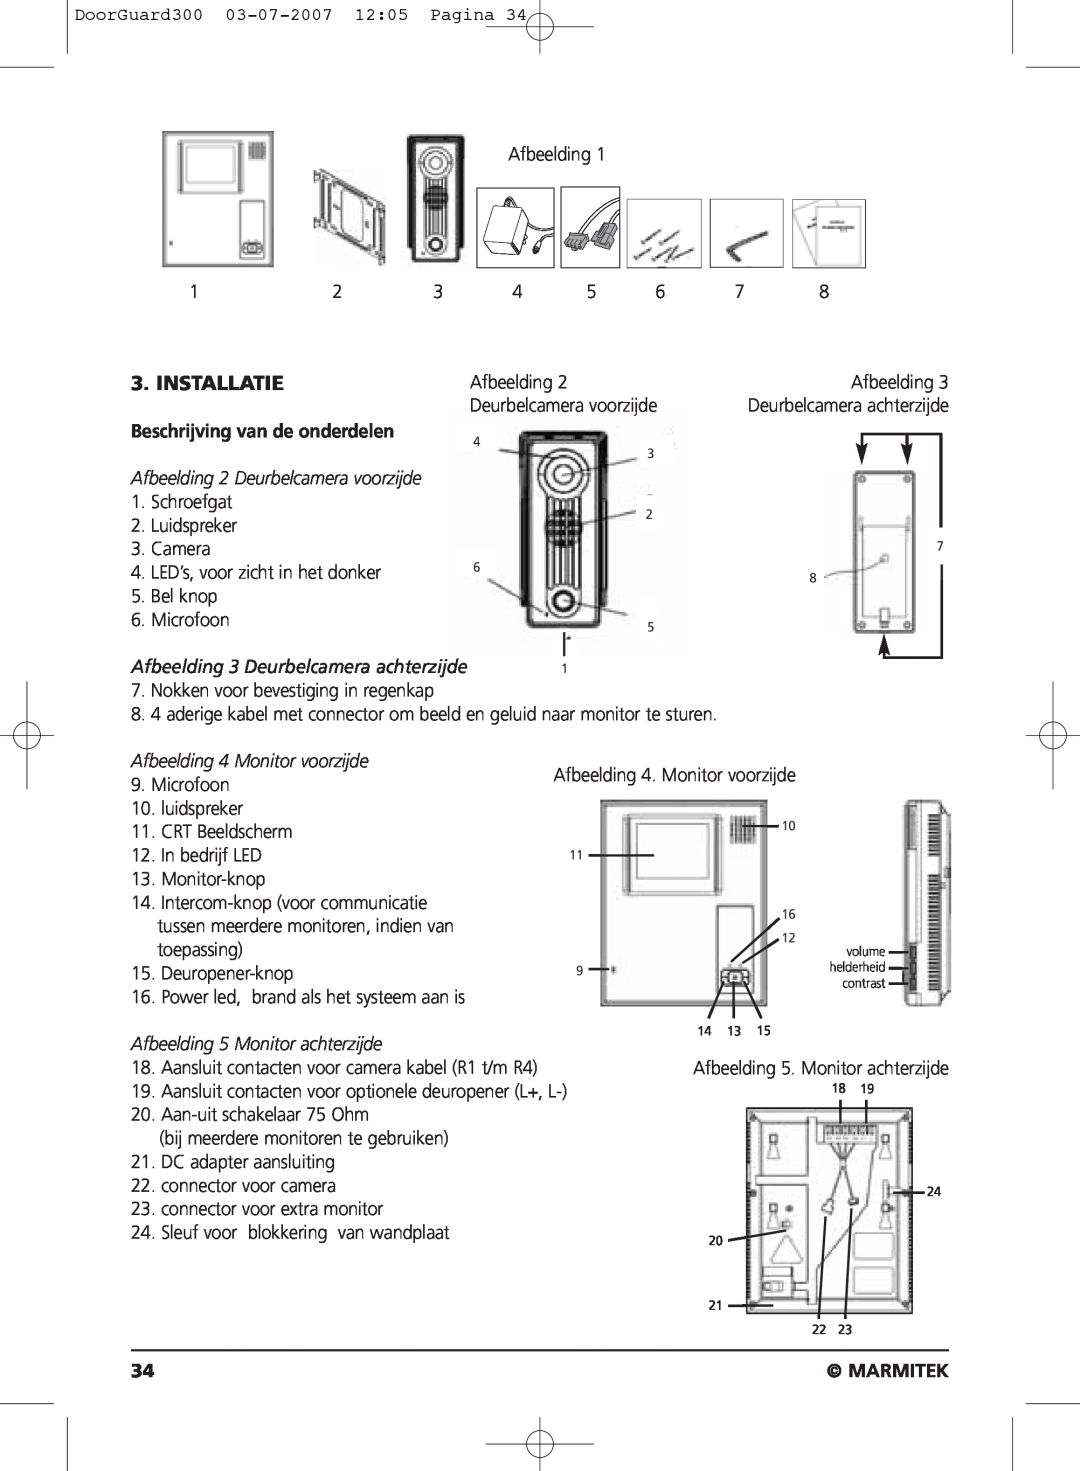 Marmitek DOORGUARD300TM user manual Installatie, Beschrijving van de onderdelen, Marmitek 